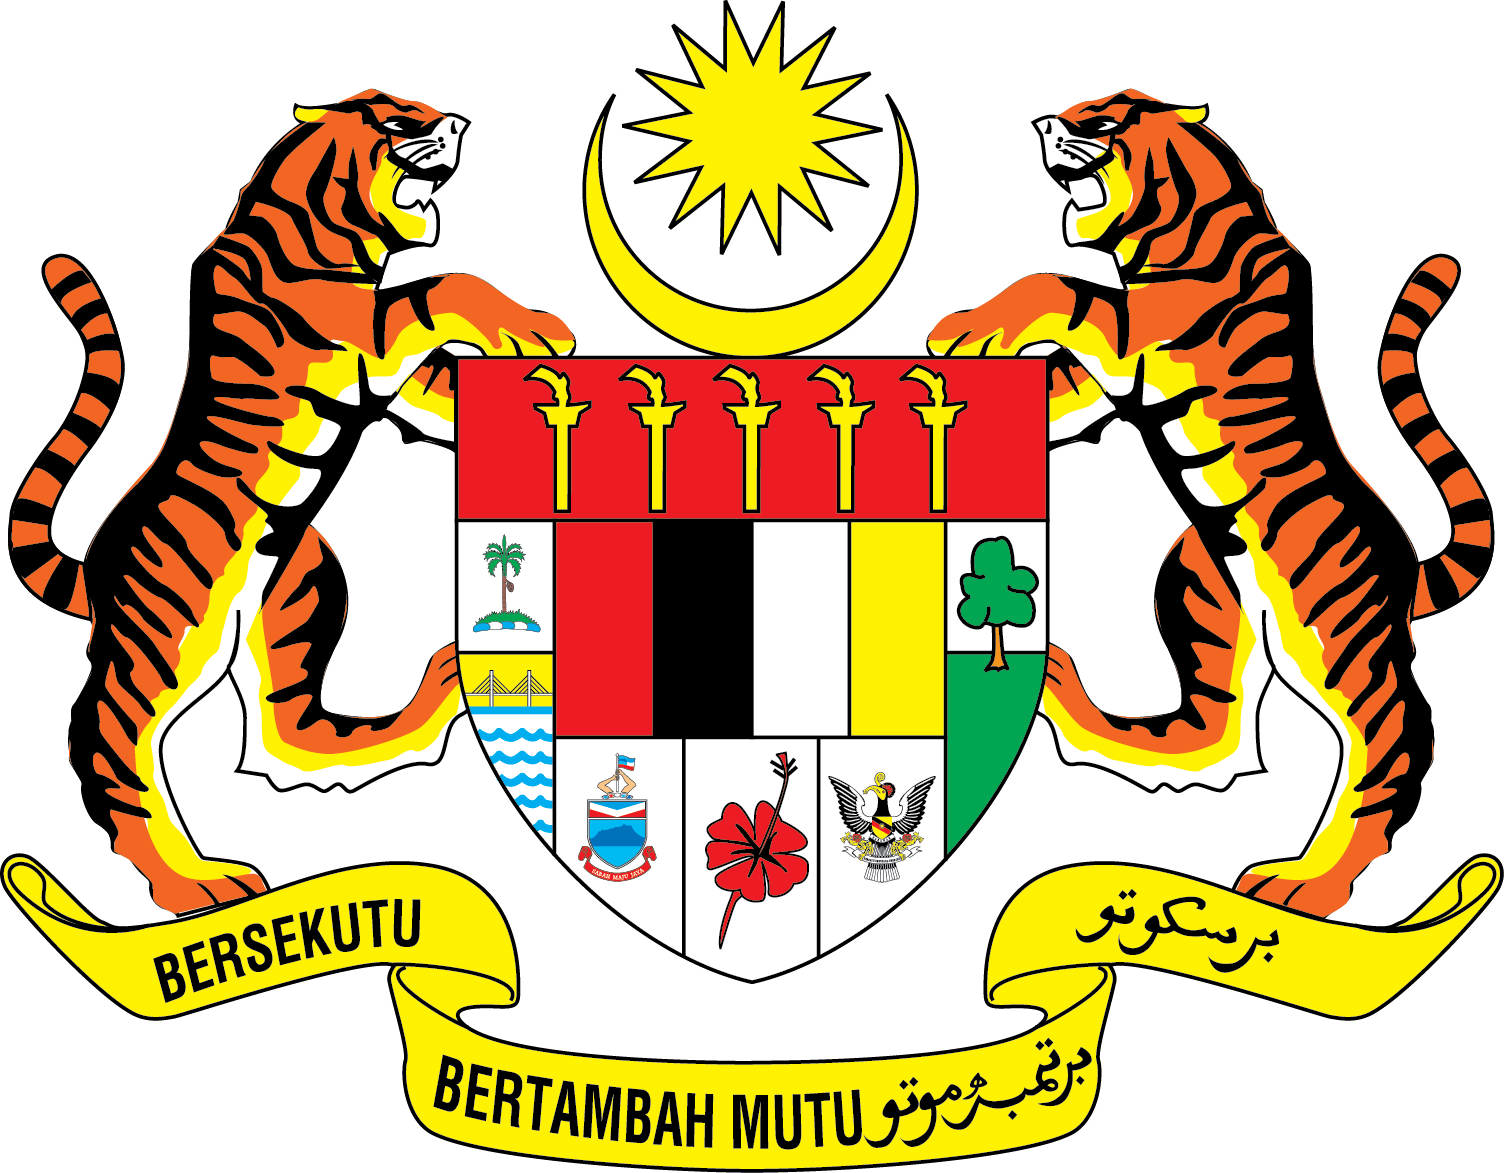 Suruhanjaya Perkhidmatan Awam Malaysia Utama